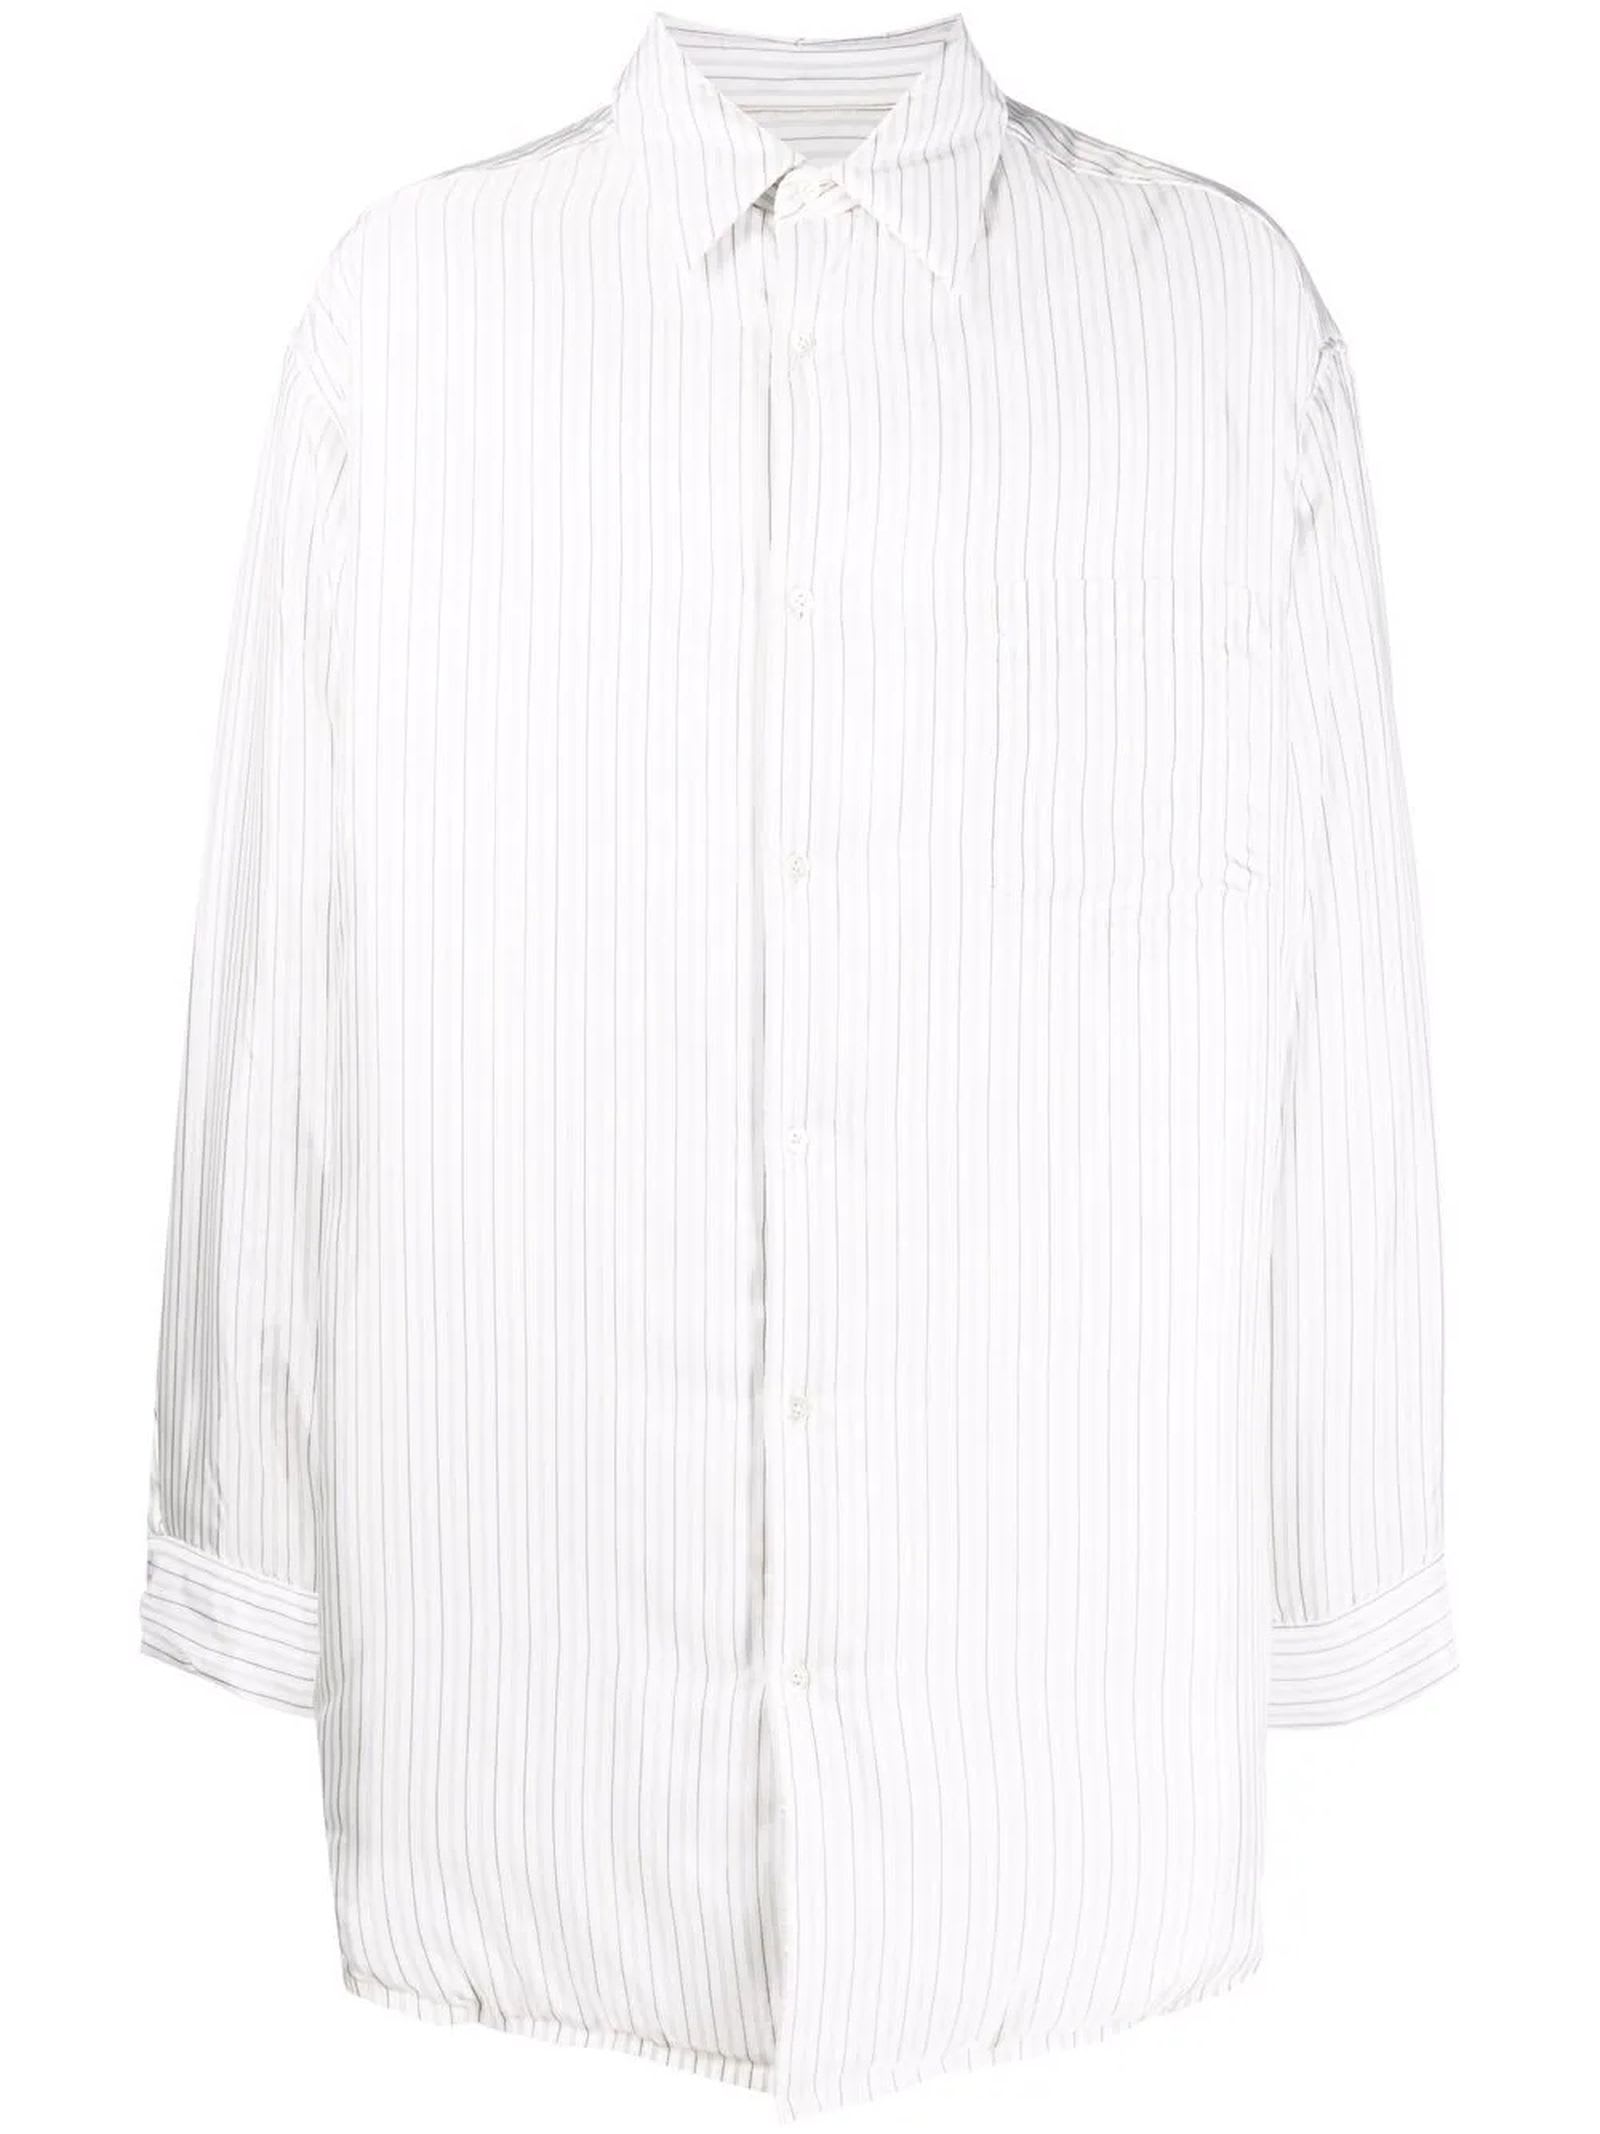 Maison Margiela White Oversized Shirt Jacket